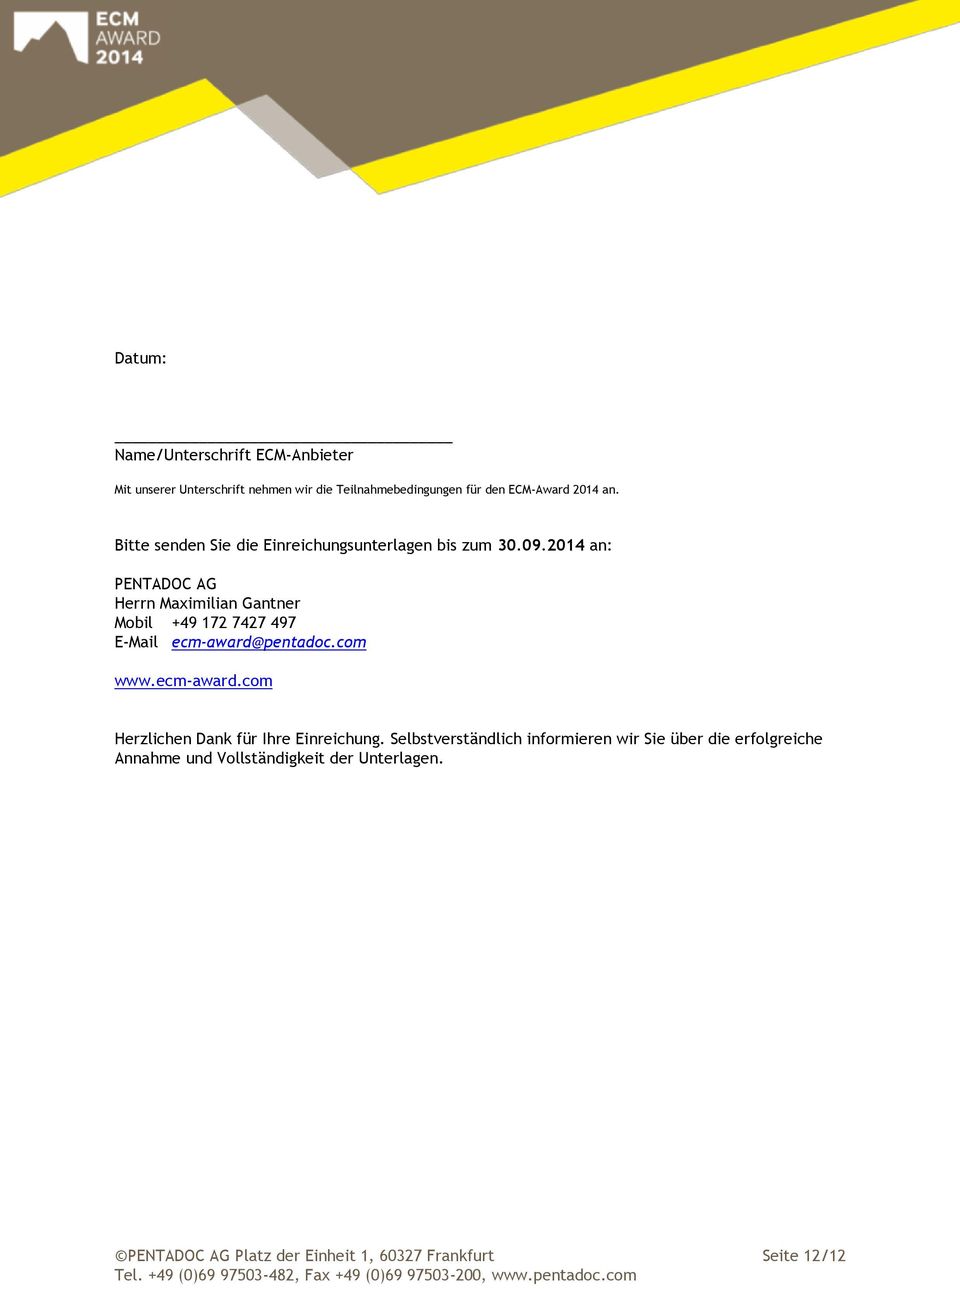 2014 an: PENTADOC AG Herrn Maximilian Gantner Mobil +49 172 7427 497 E-Mail ecm-award@